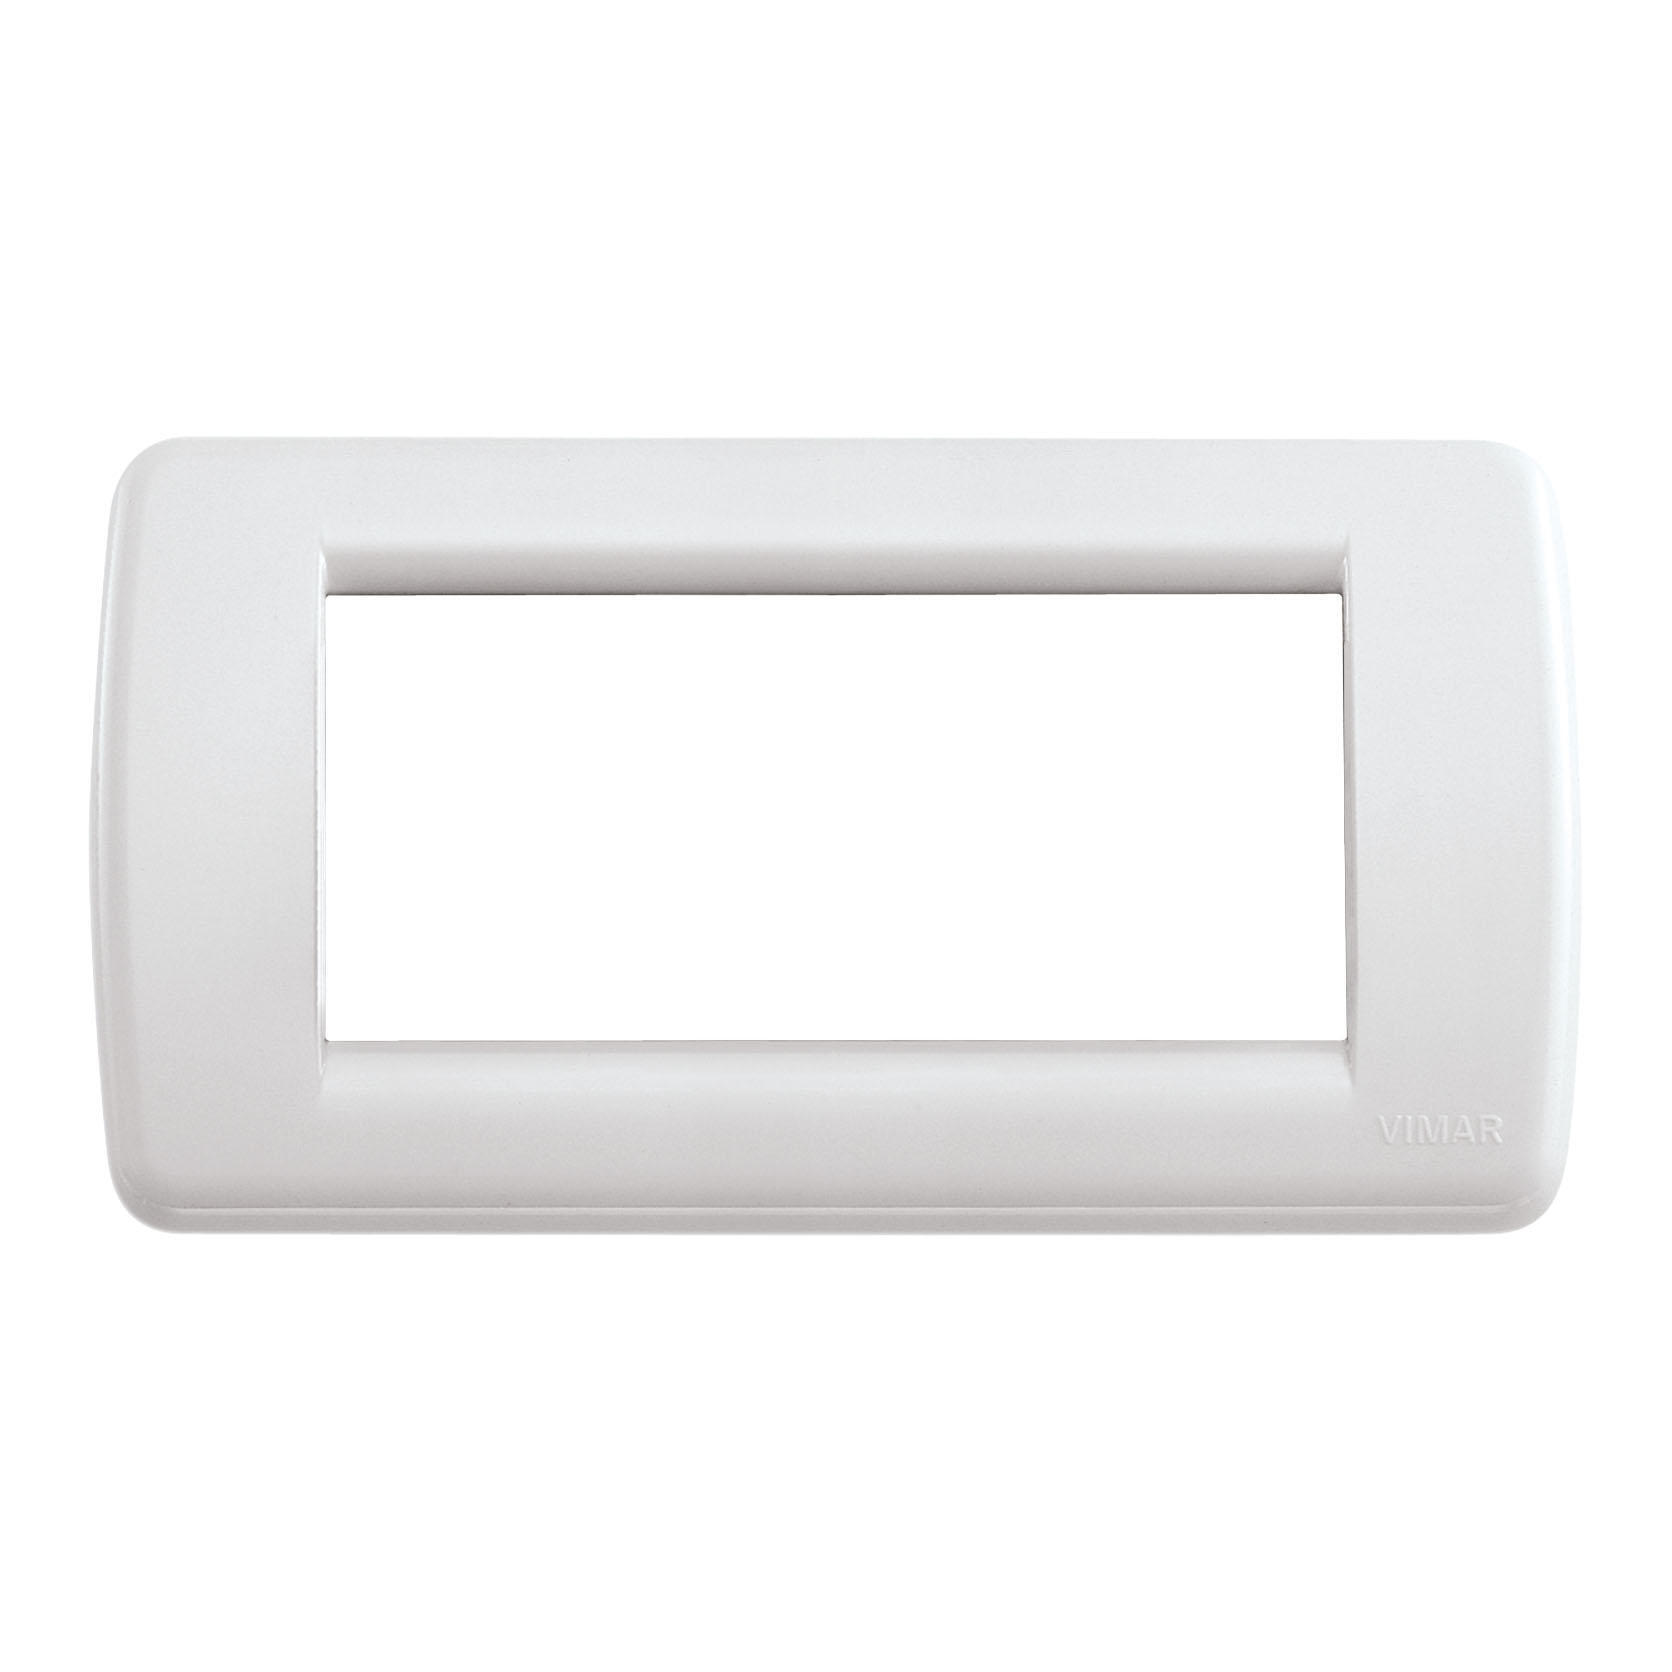 Vimar Serie Idea   Placca Rondo 4 Modulo plastico bianco lucido